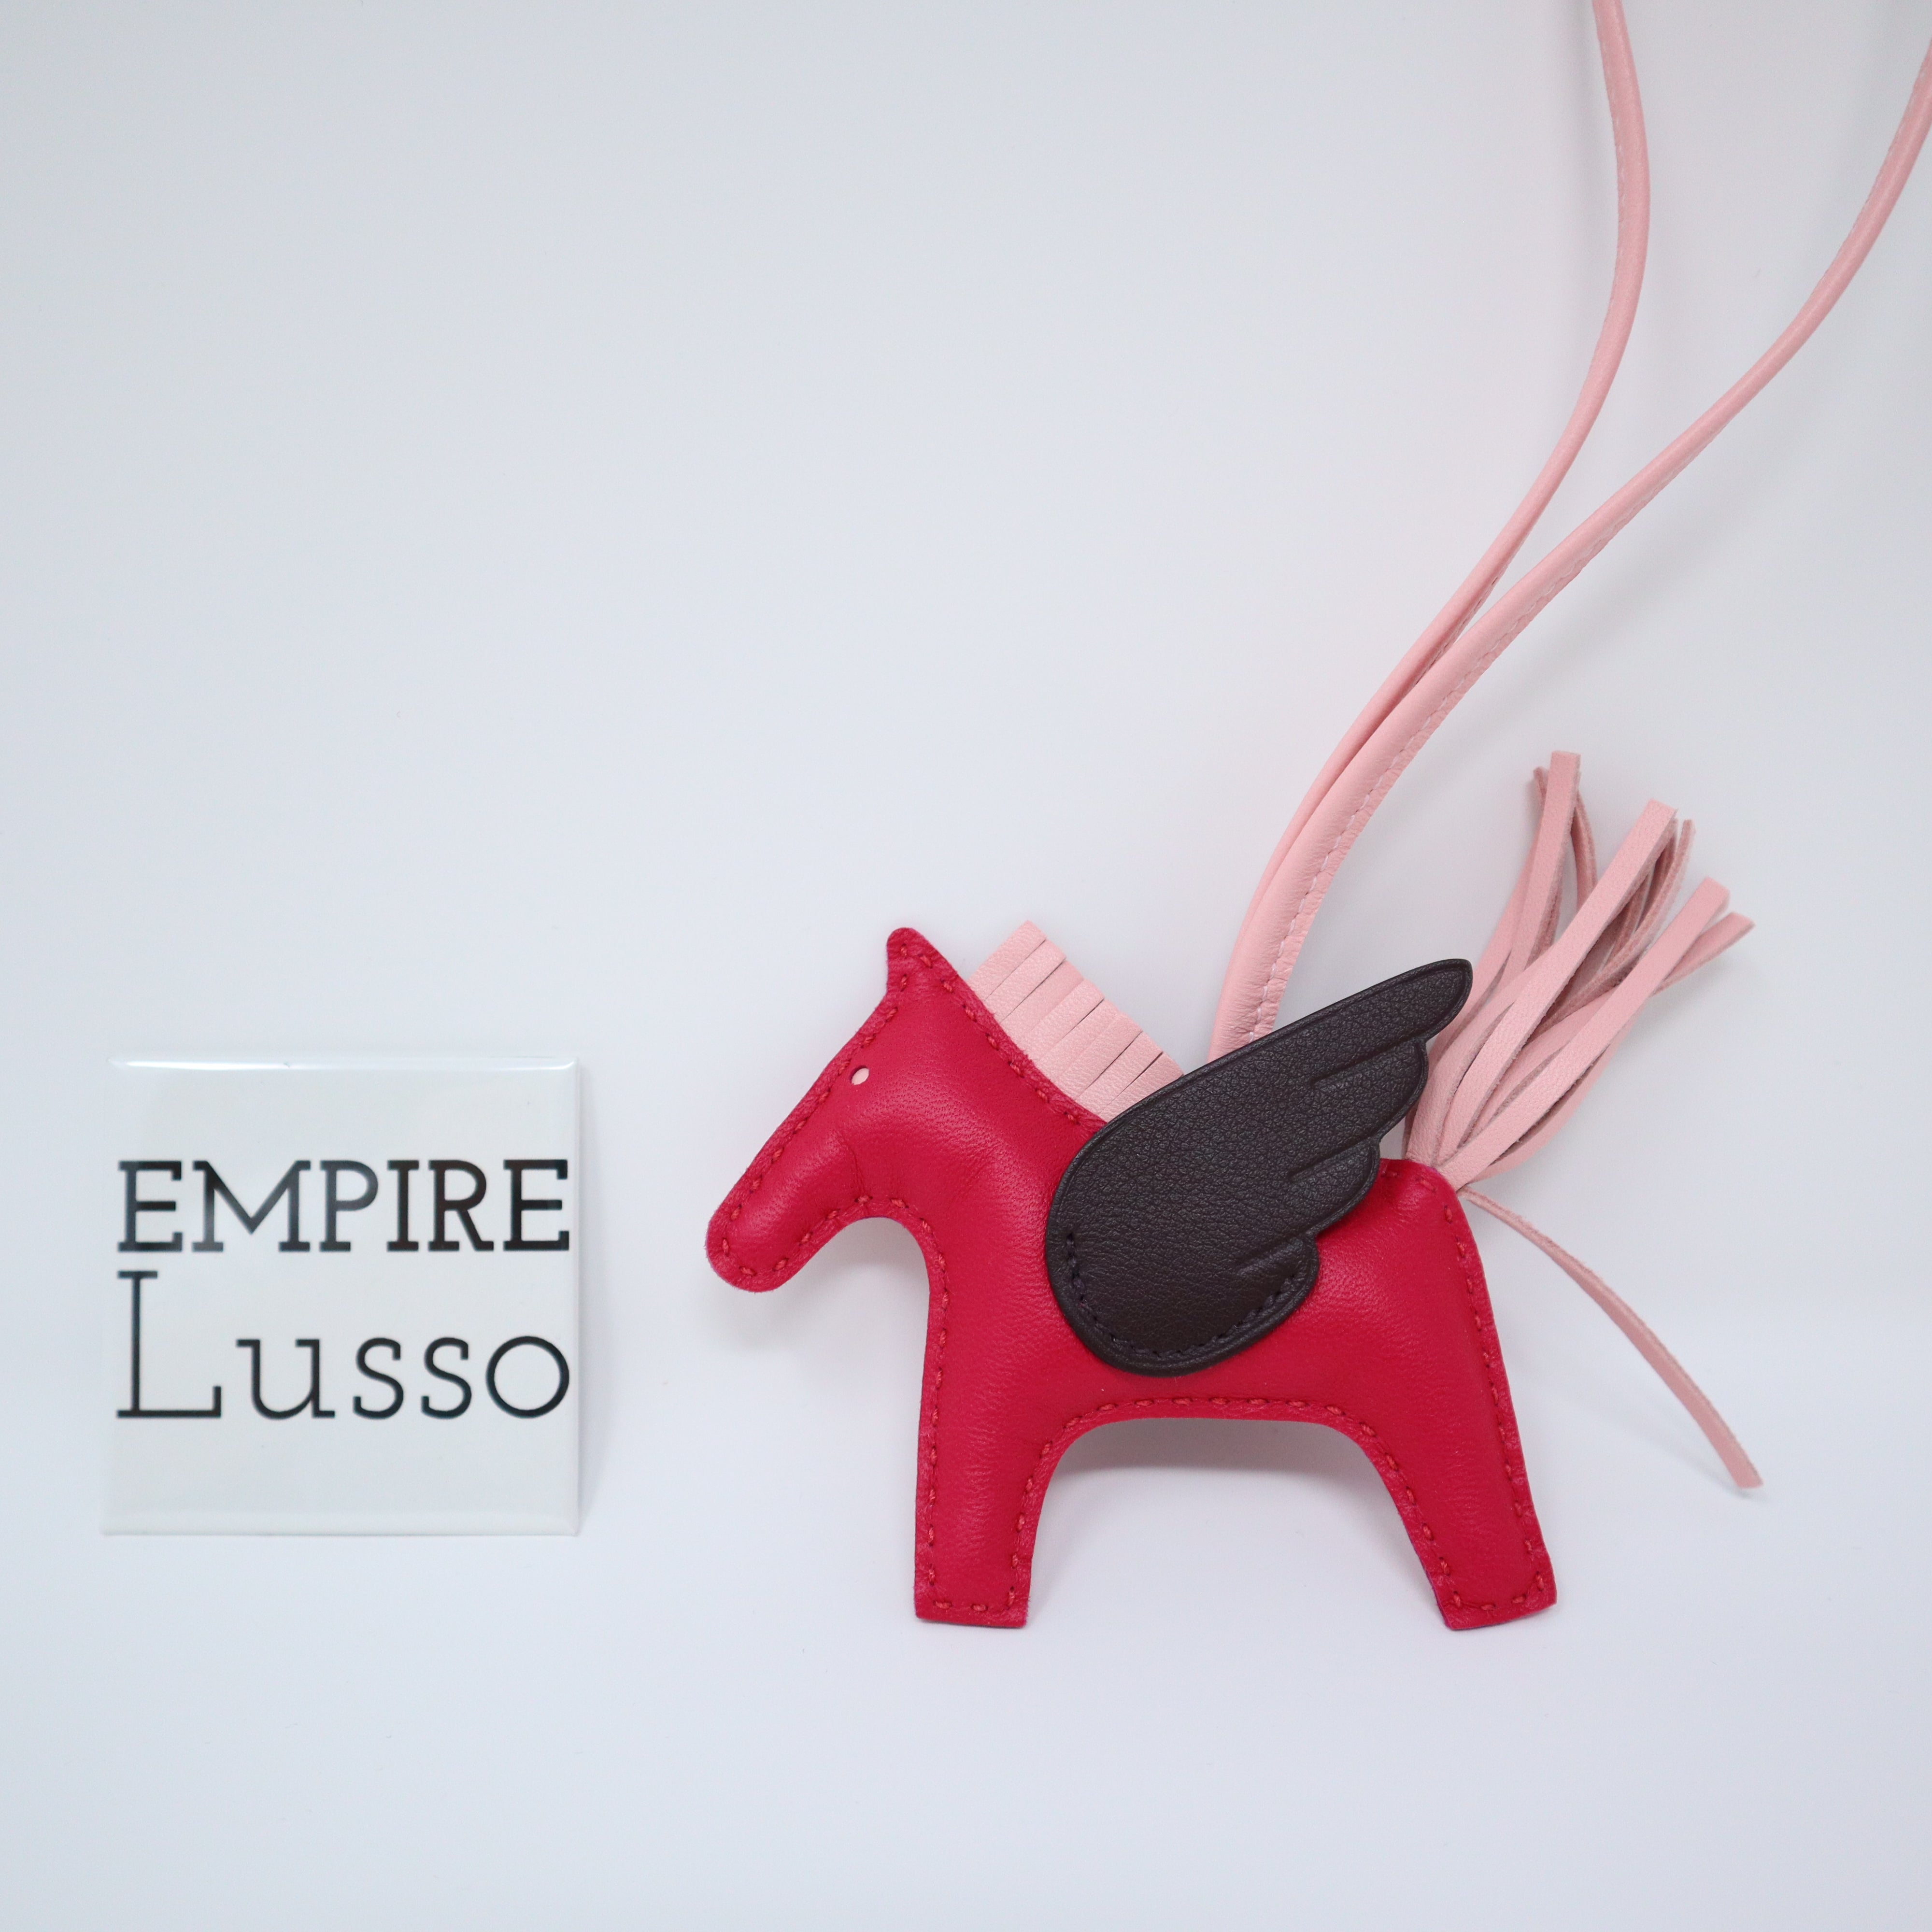 Hermes Pegase Rodeo PM Bag Charm Framboise / Rouge Sellier / Rose Sakura